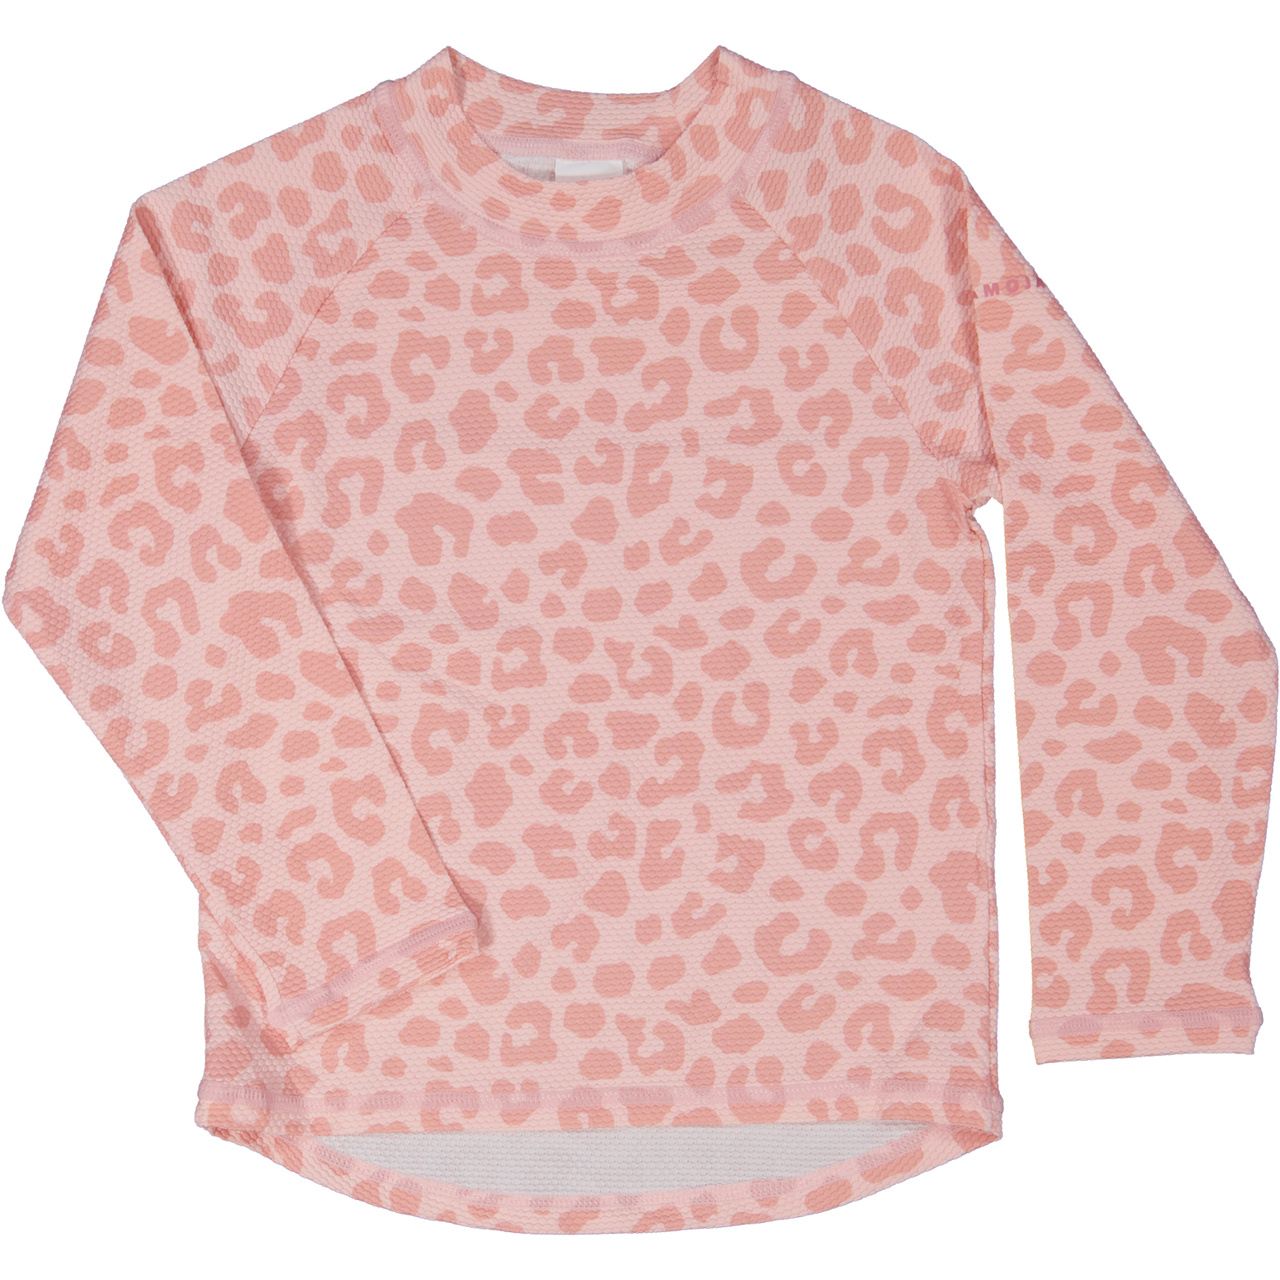 UV-L.S sweater Pink Leo  86/92